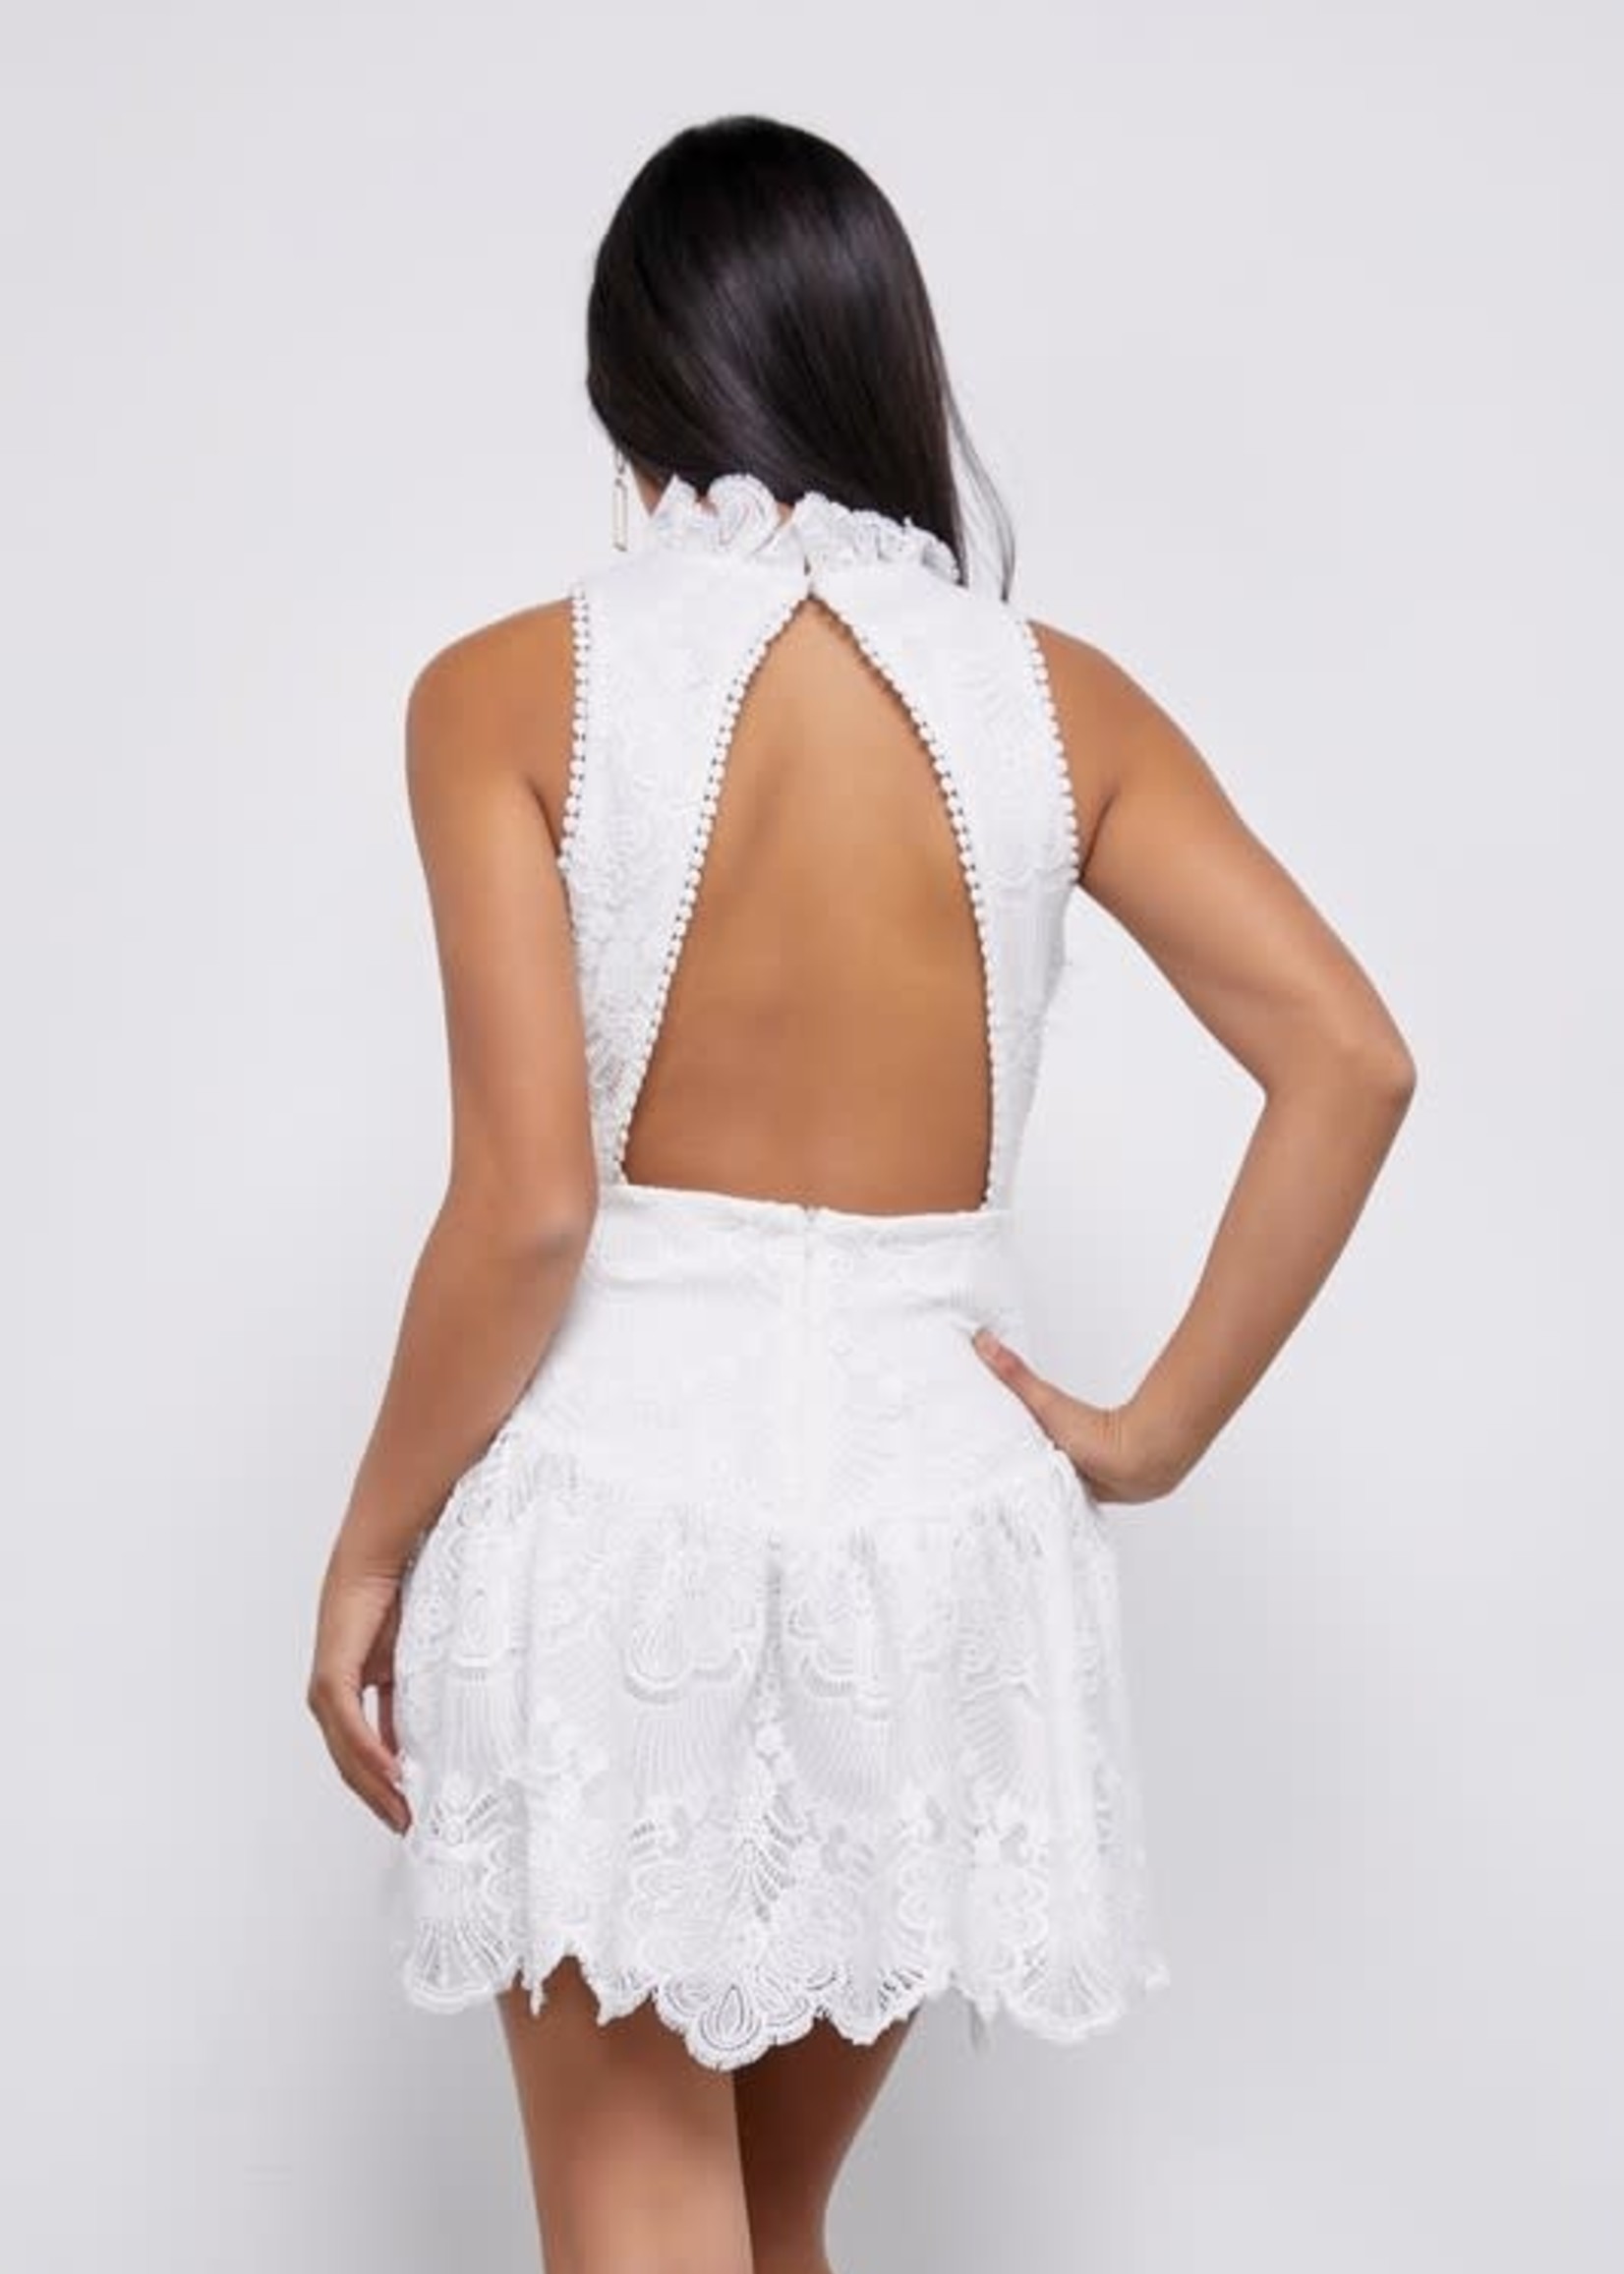 Lace Dress Up White Dress